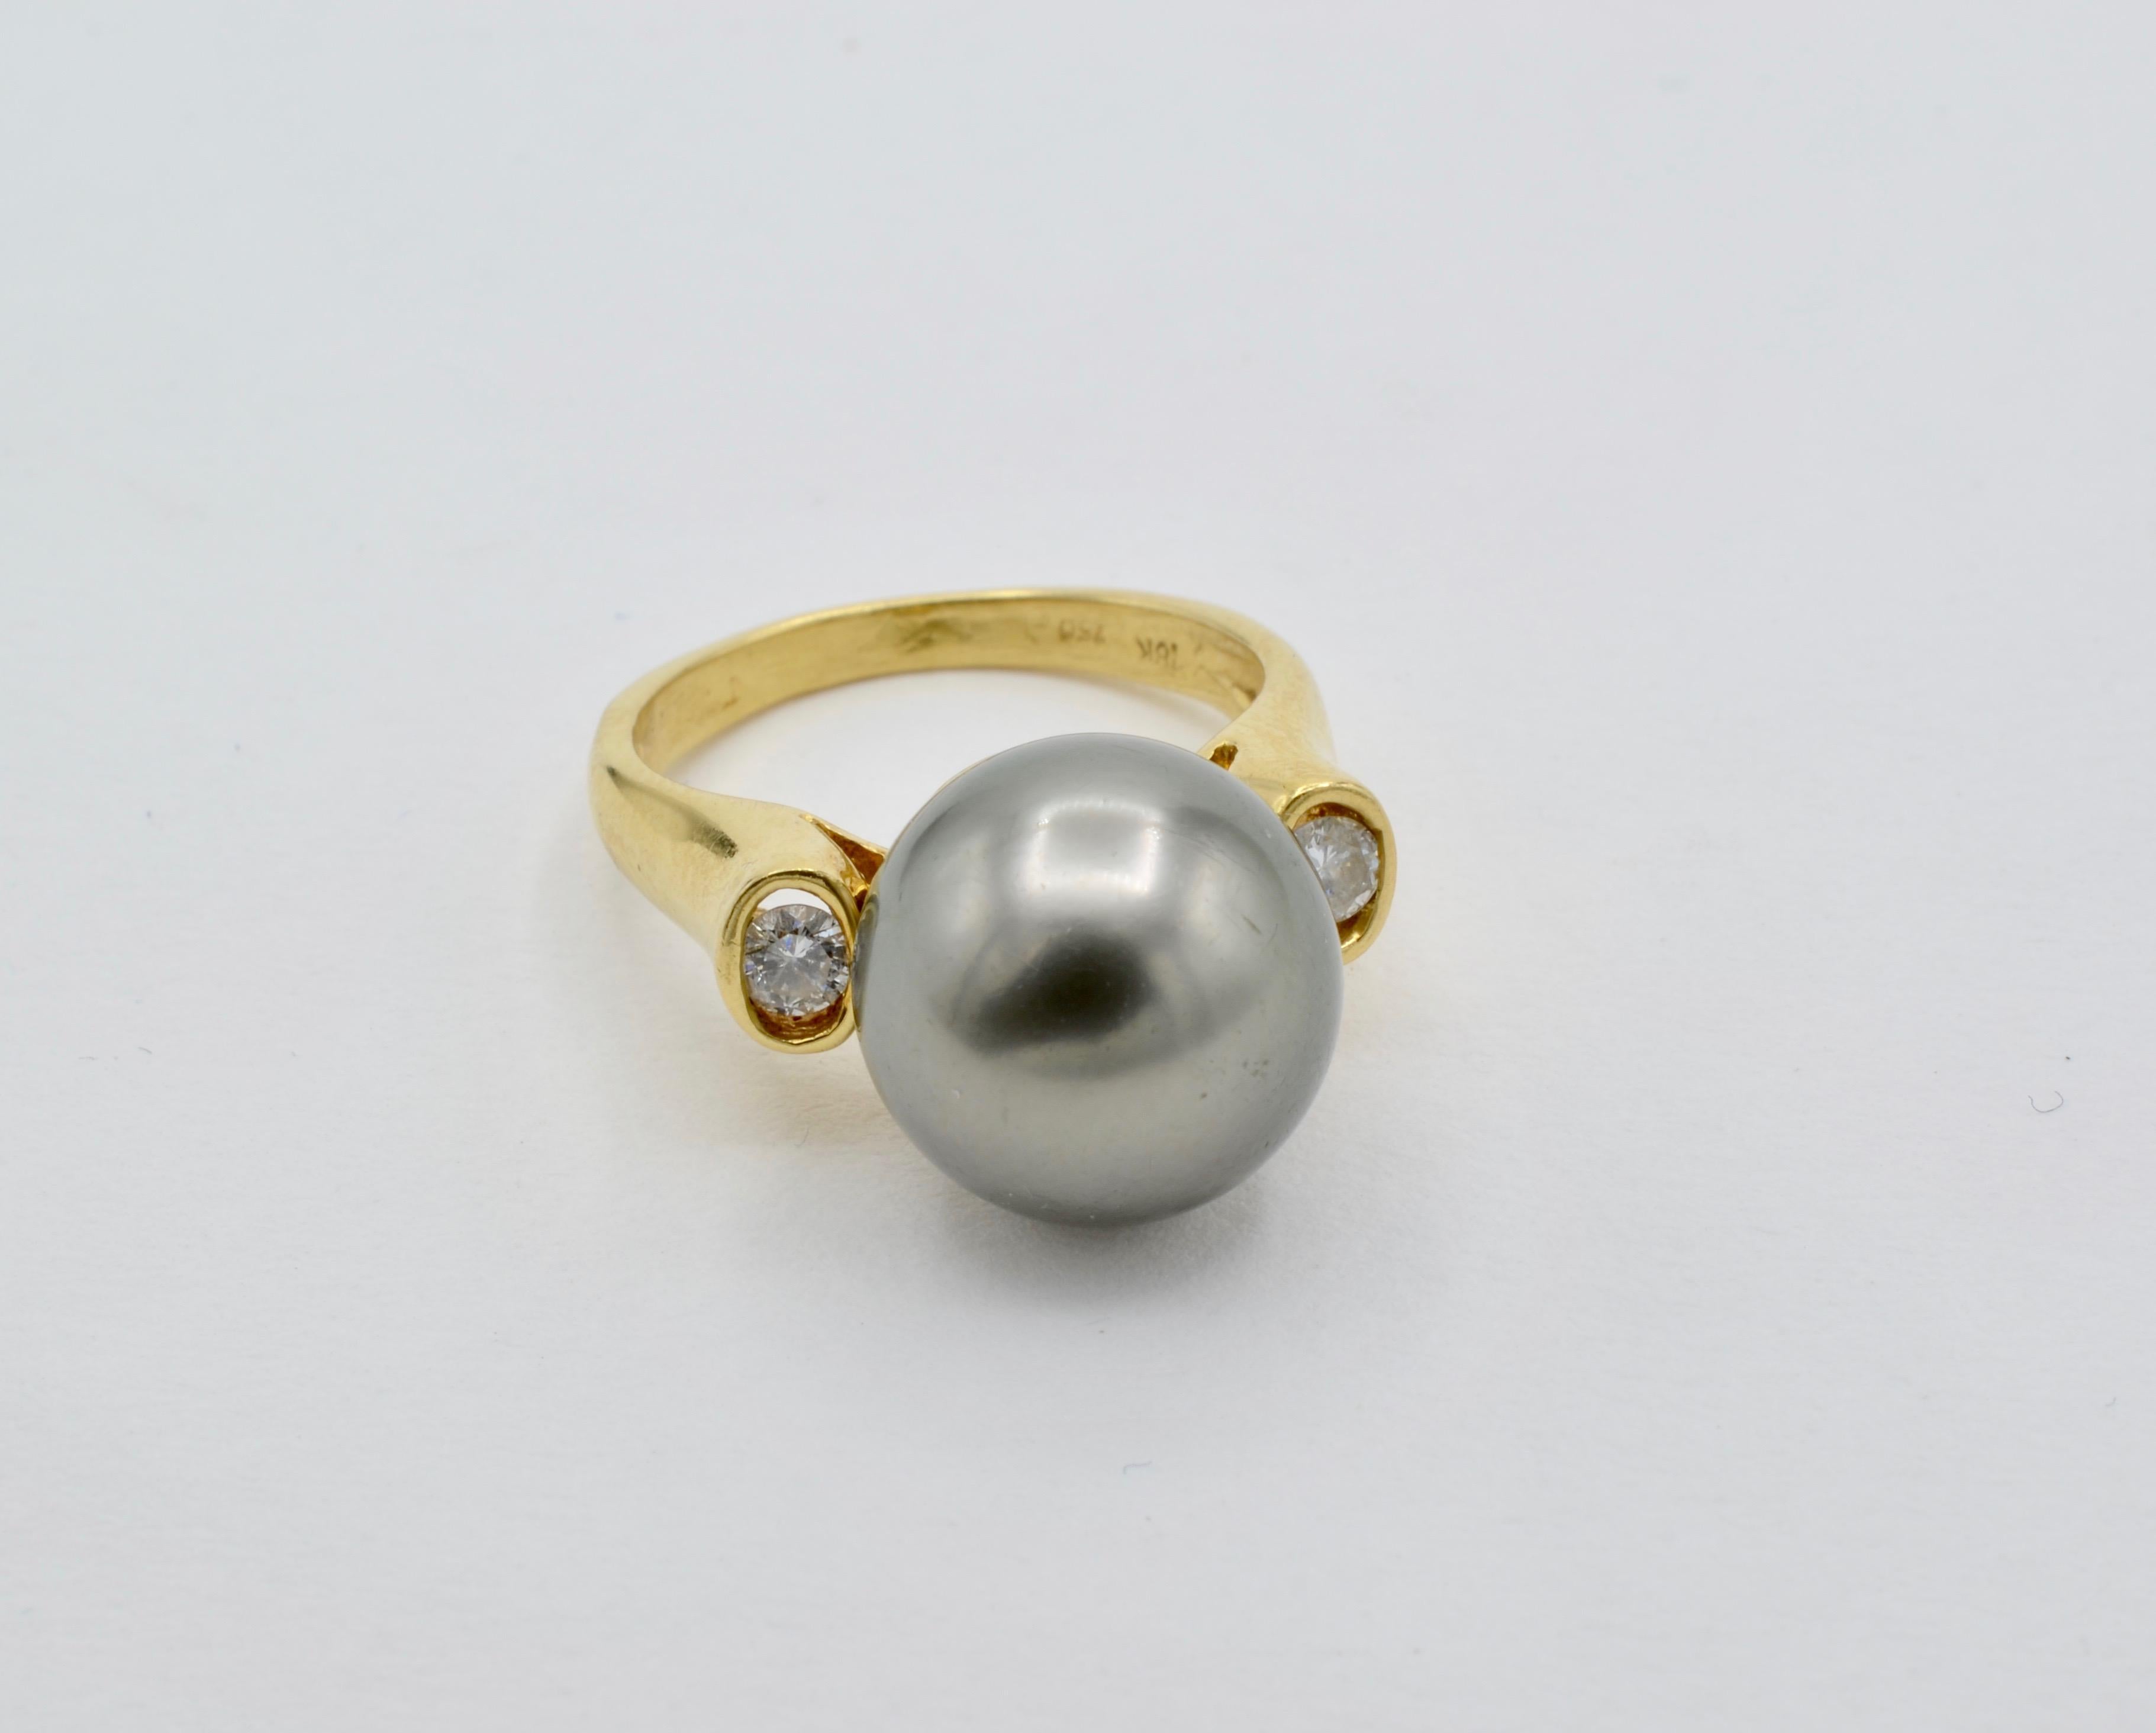 Cette magnifique perle de Tahiti est magnifiquement sertie dans de l'or 18k avec deux diamants ronds (environ 0,20 tw). La perle est placée haut sur la lunette pour mettre en valeur sa beauté et sa taille (13 mm). La bague est une taille 7 3/4 et